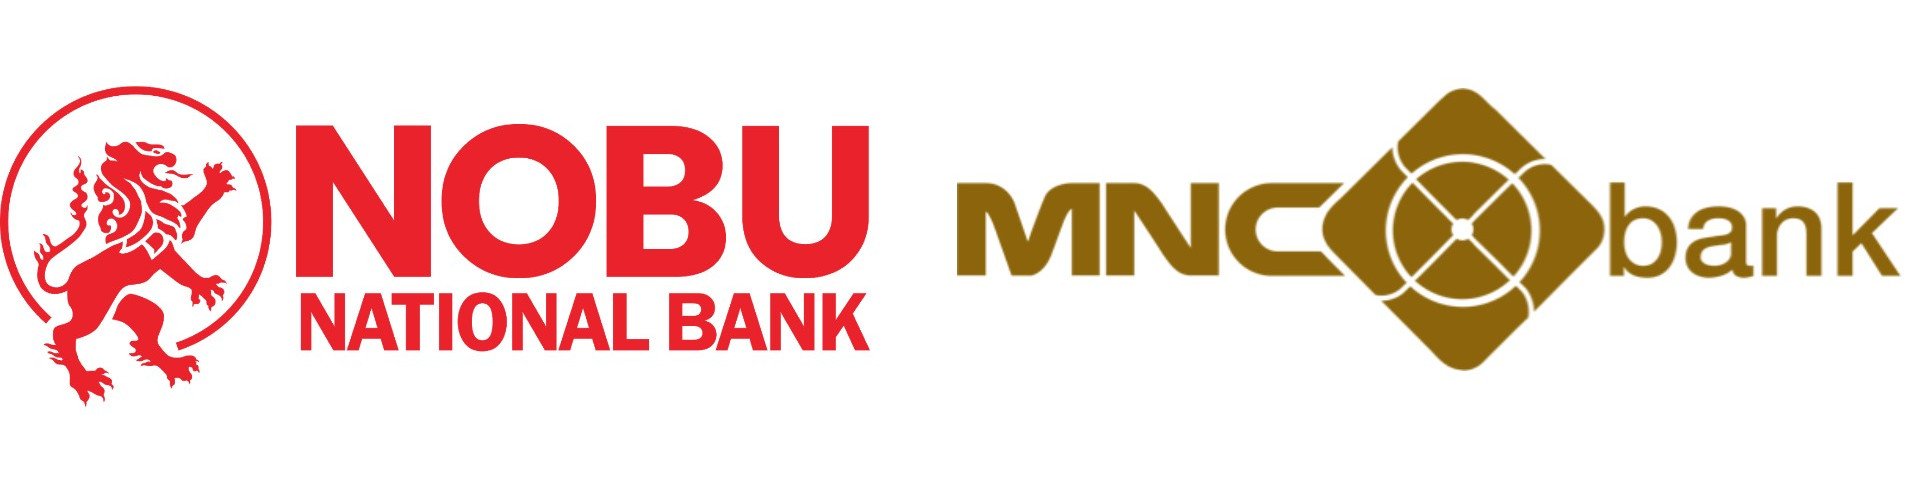  Menanti Kepastian Merger Bank Milik Hary Tanoe (BABP) dan James Riady (NOBU)